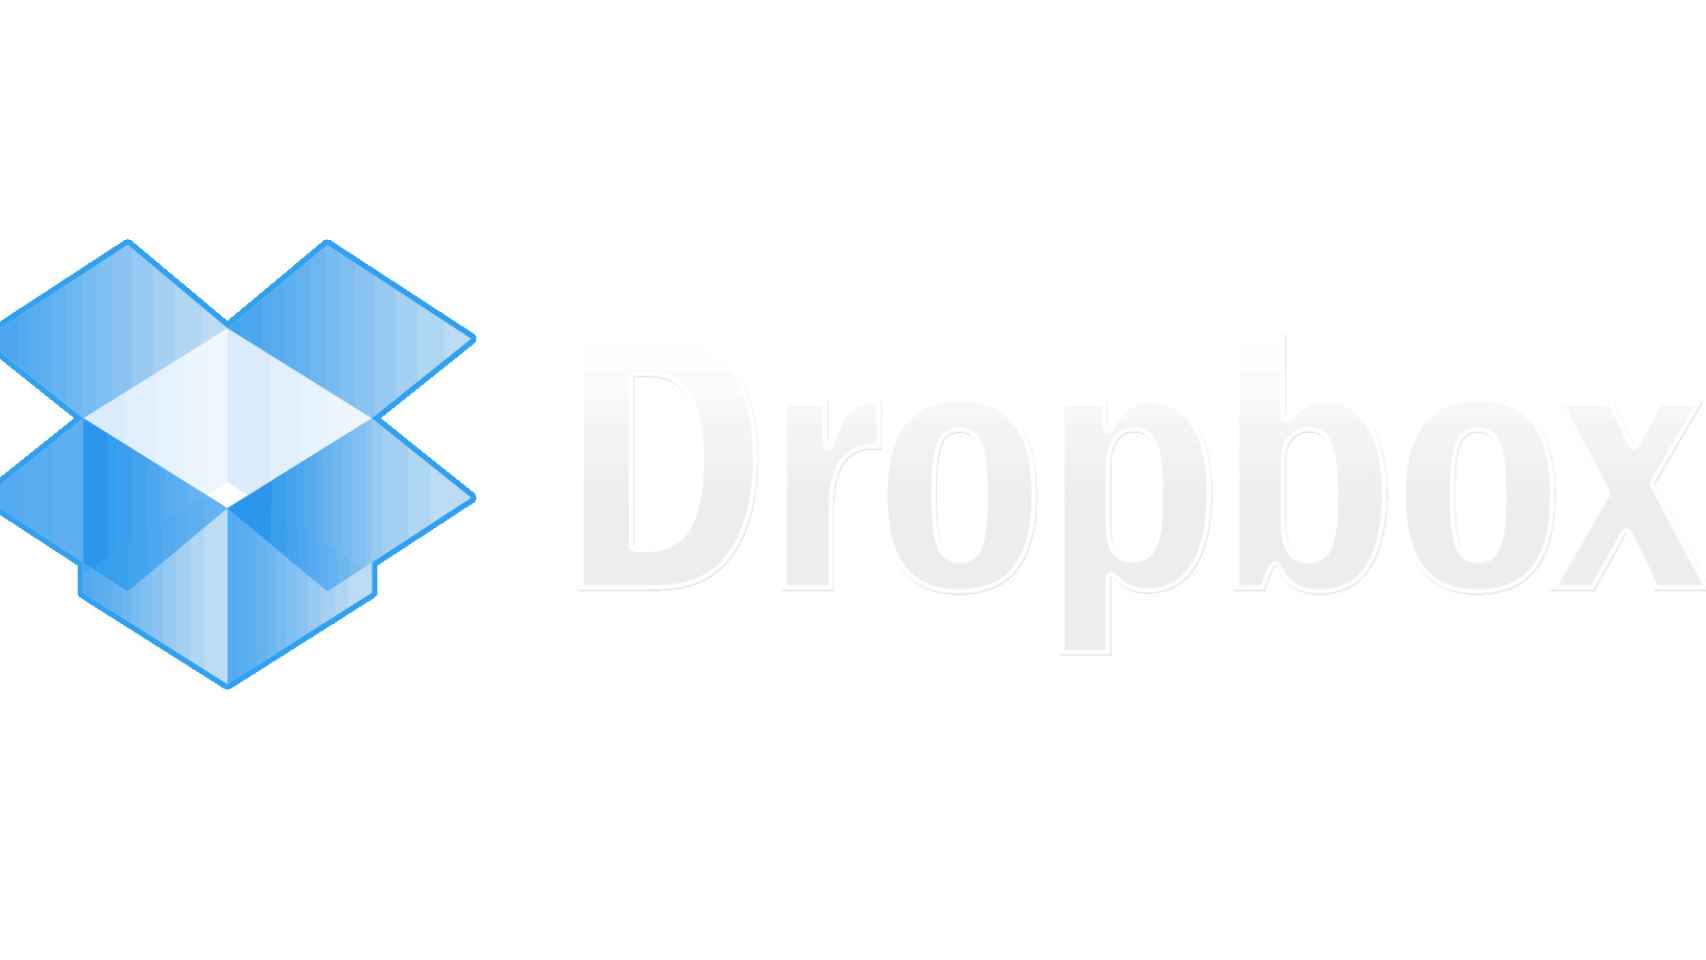 Dropbox facilita la verificación en 2 pasos con la confirmación en móvil